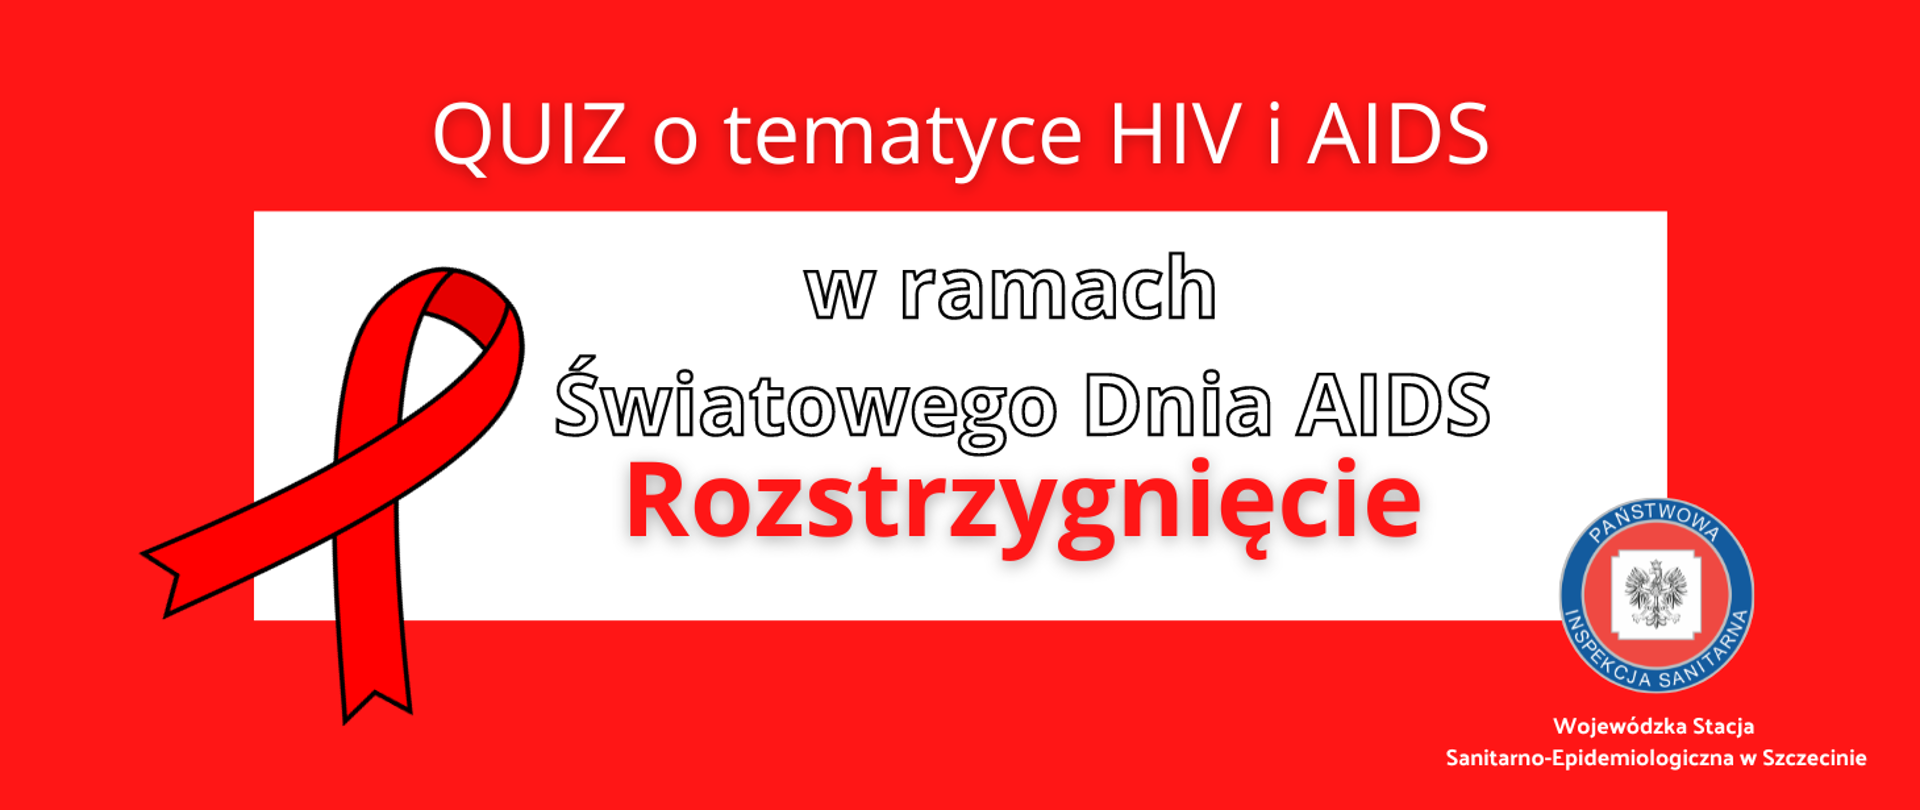 1 grudnia test nt. HIV – Quiz o tematyce HIV i ADIS w ramach Światowego dnia AIDS r. rozstrzygnięcie. Wojewódzka Stacja Sanitarno-Epidemiologiczna w Szczecinie